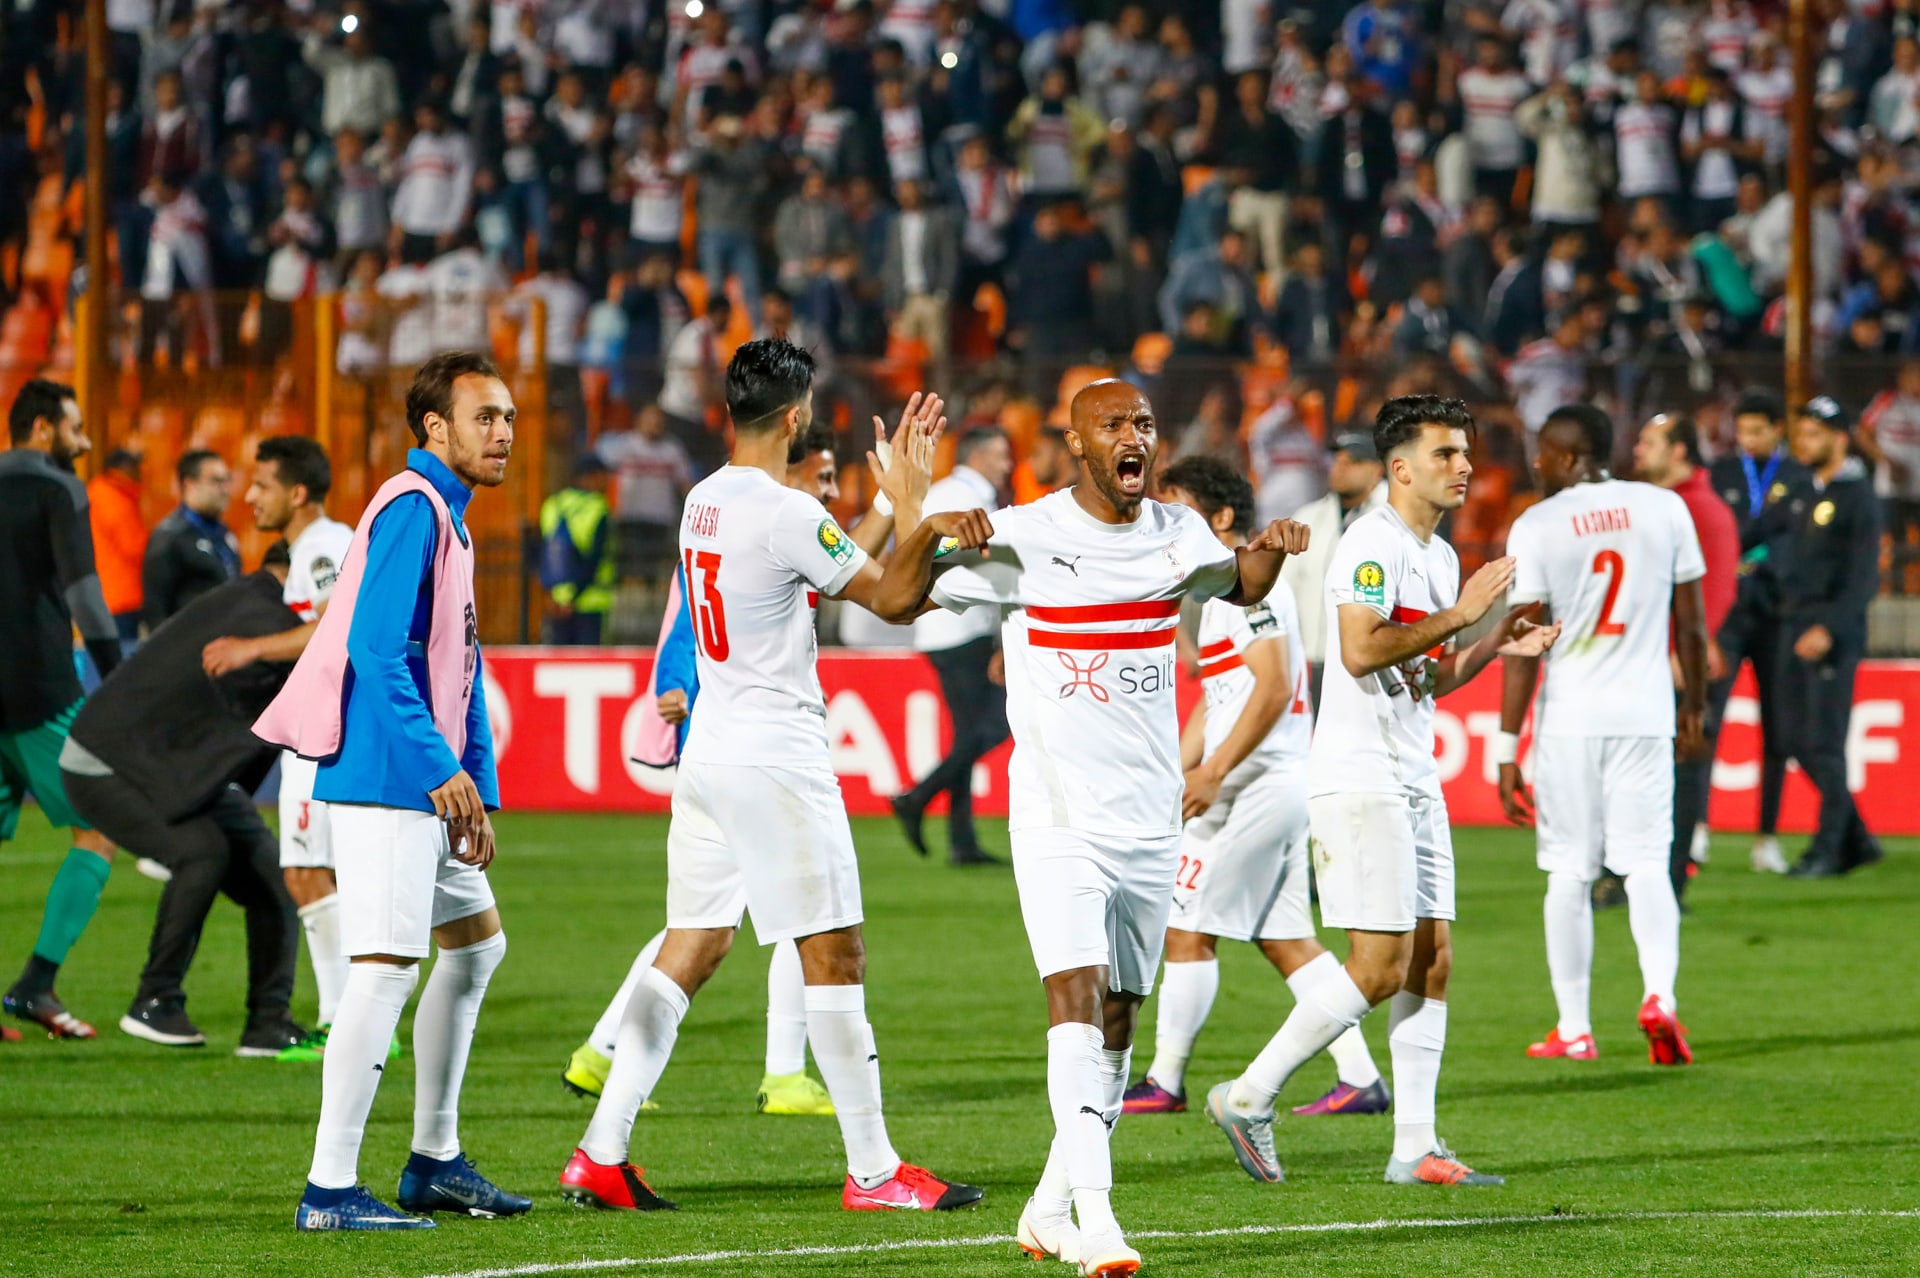 الزمالك المصري يتأهل لنصف نهائي دوري أبطال أفريقيا رغم هزيمته من الترجي